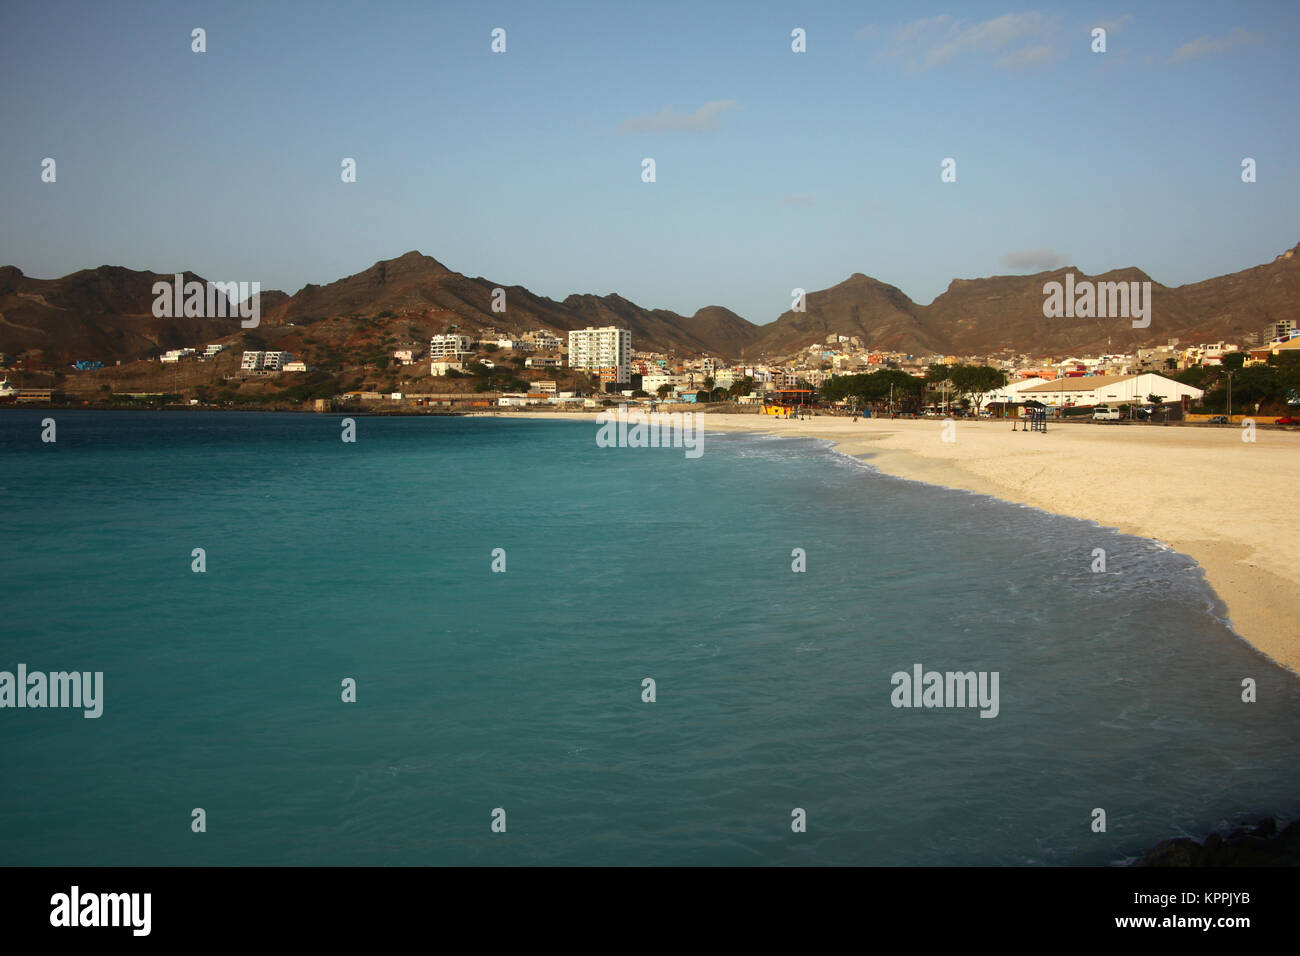 São Pedro Beach, Mindelo on Sao Vicente Island, Cape Verde Islands, Atlantic. Stock Photo